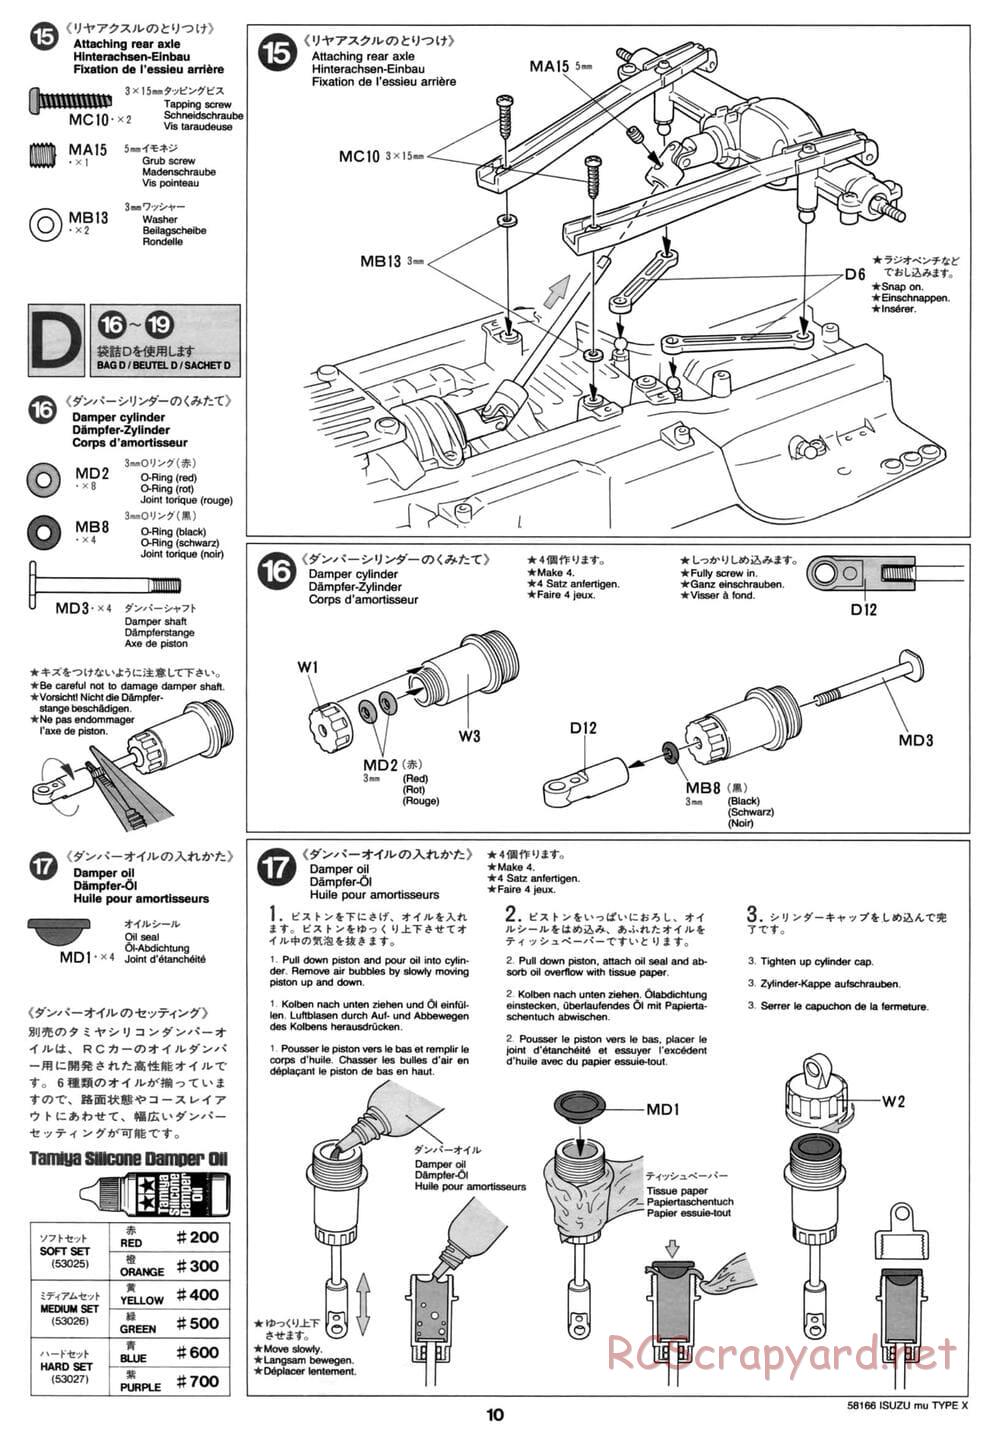 Tamiya - Isuzu Mu Type X - CC-01 Chassis - Manual - Page 10